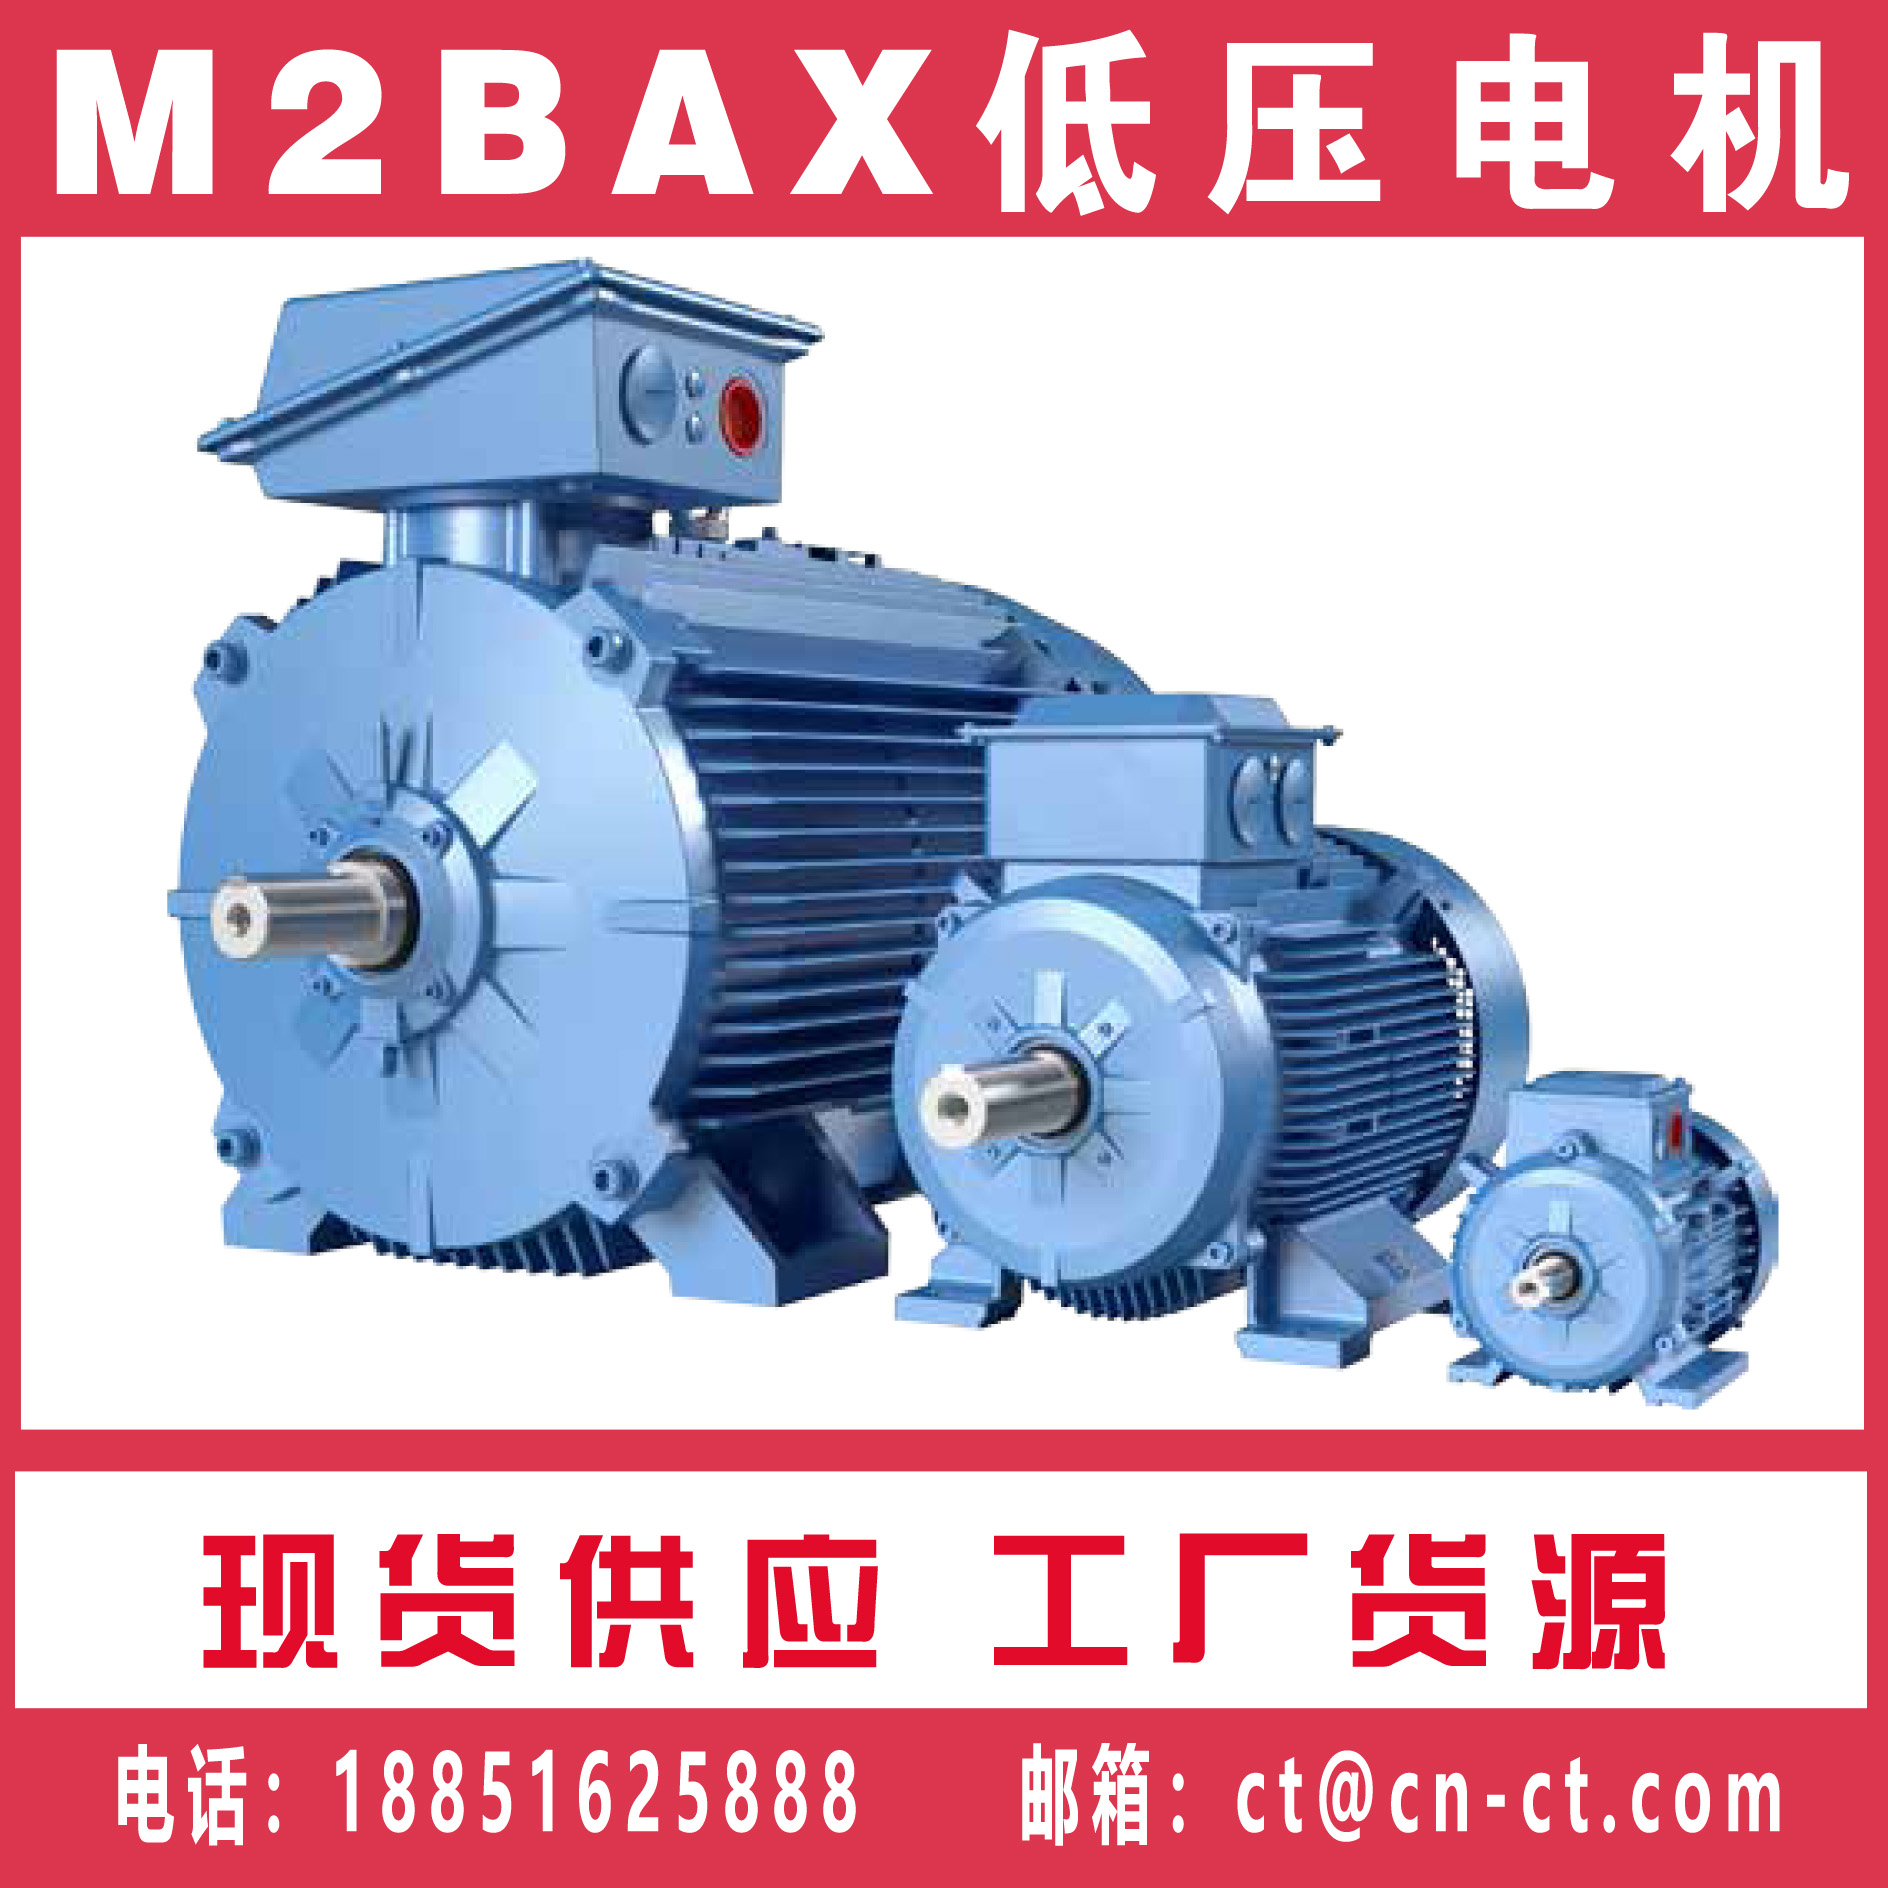 【ABB电机】_M2BAX M2BA一般用途电机样本 参数 电气特征